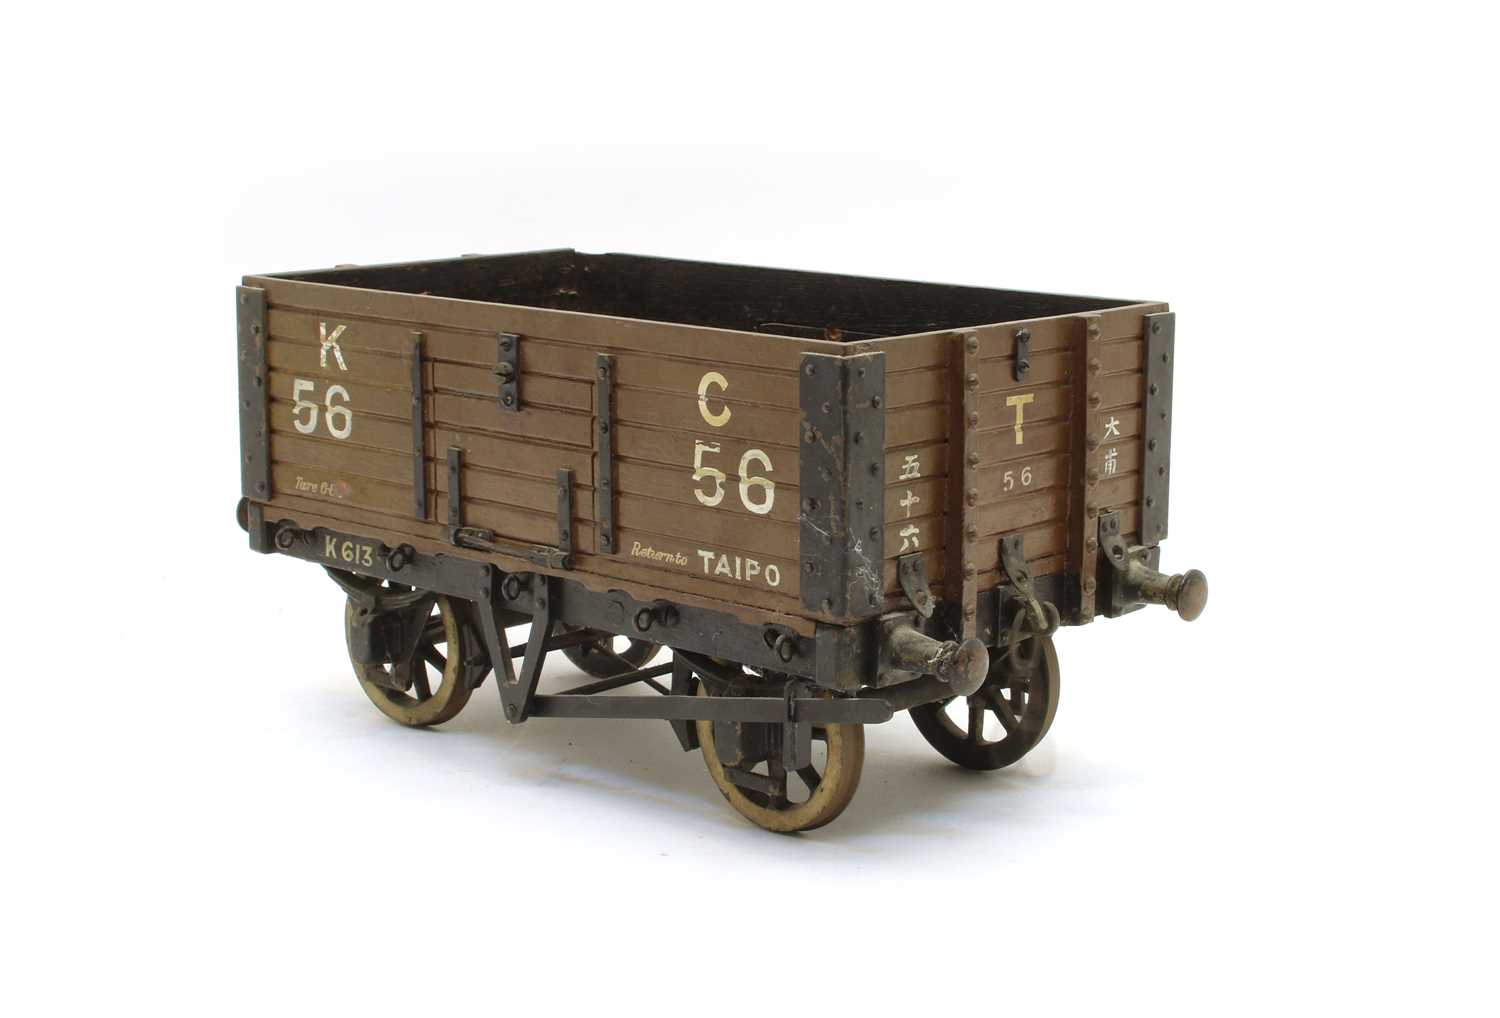 A scratch built model of an open wagon,